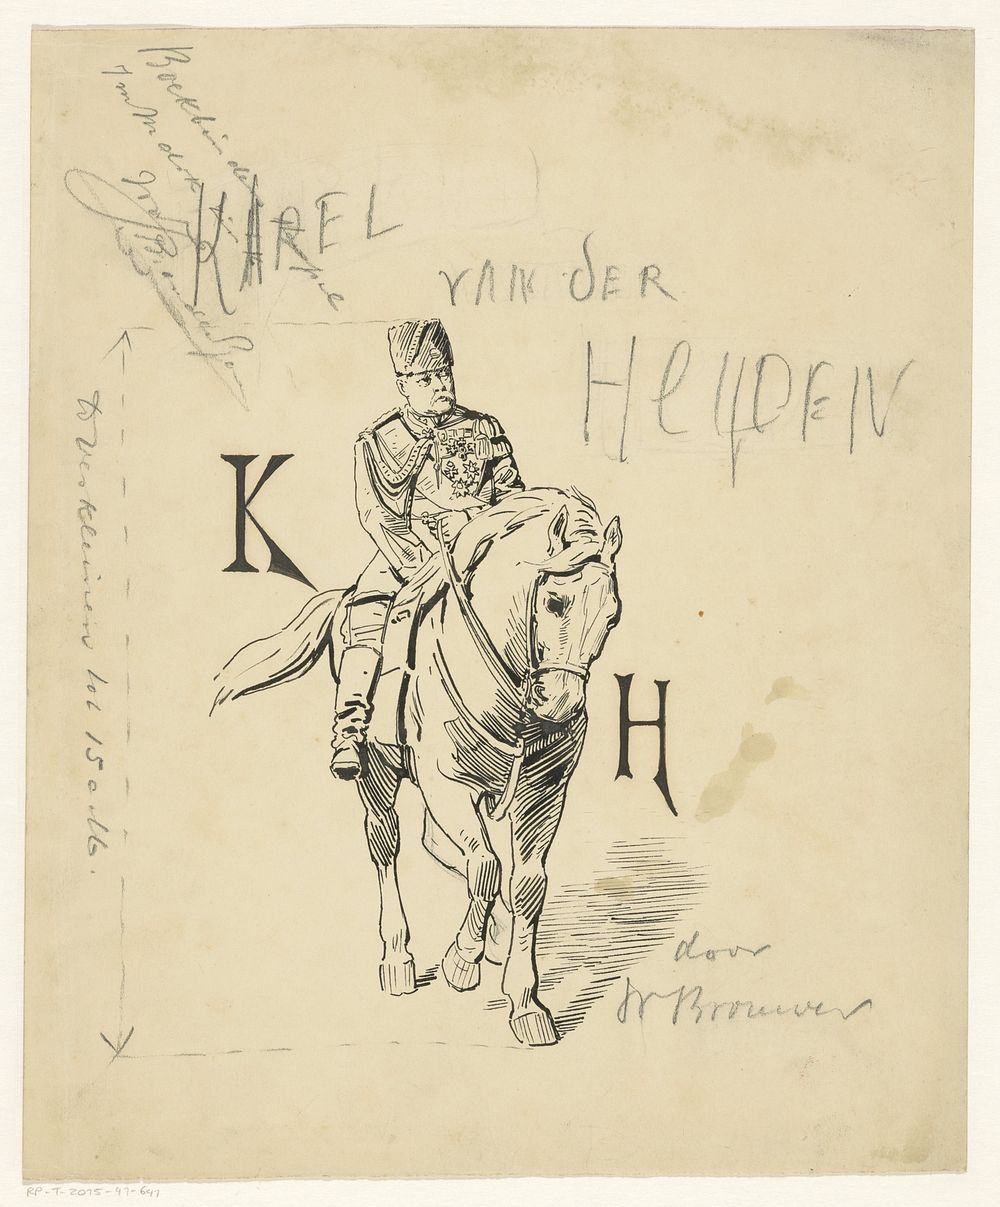 Bandontwerp voor: W. Brouwer, Karel van der Heyden (Beroemde mannen dl. V), 1900 (in or before 1889) by Jan Hoynck van…